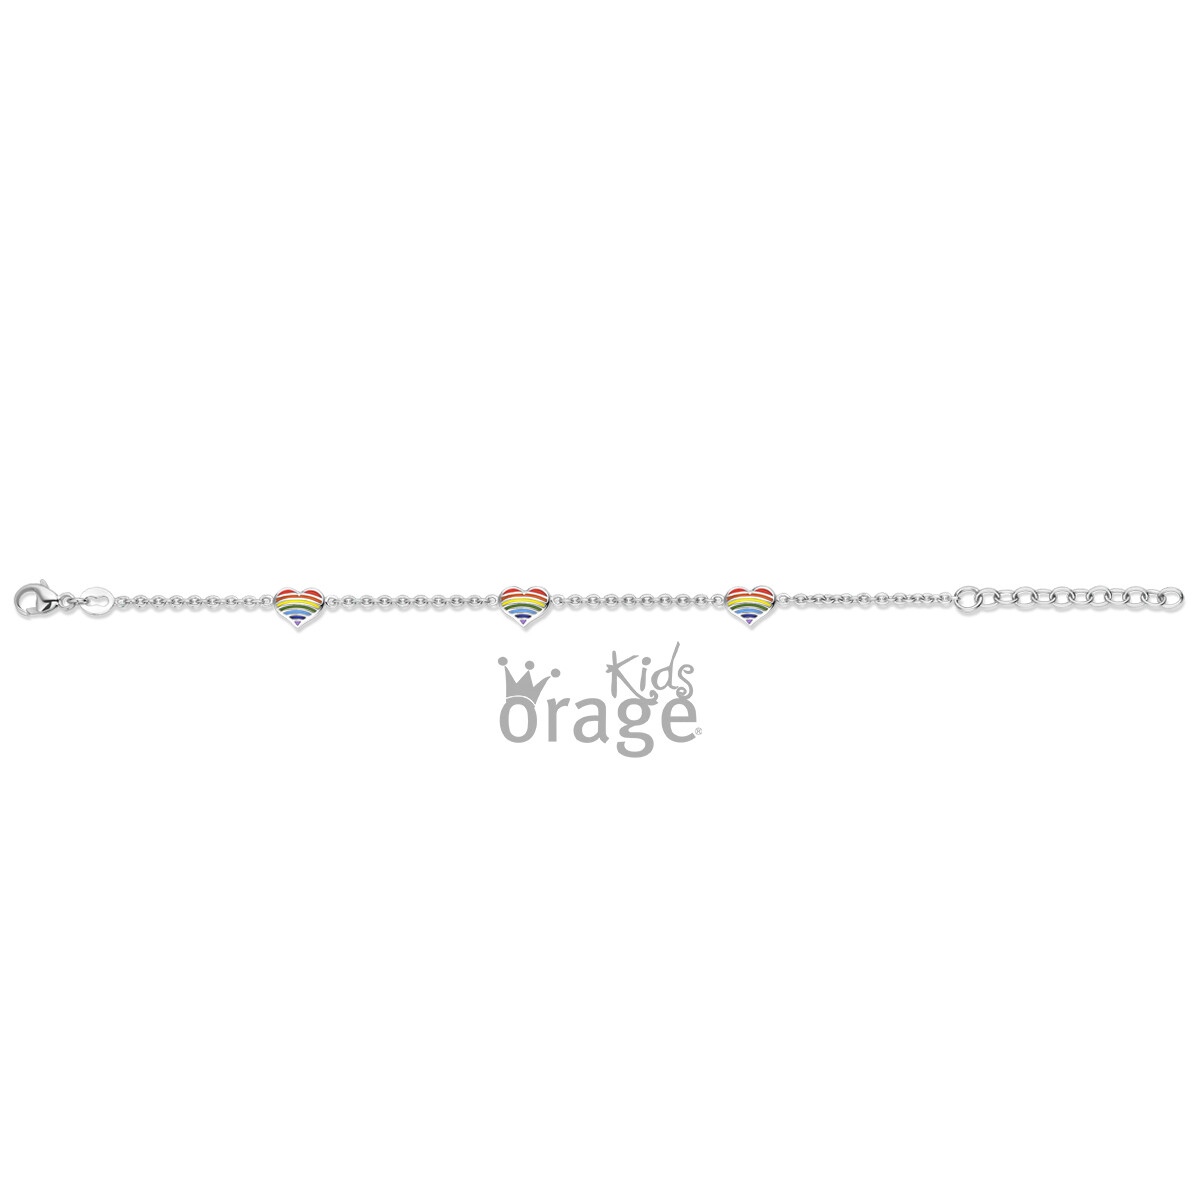 Bracelet Orage Kids k2618 - K2405